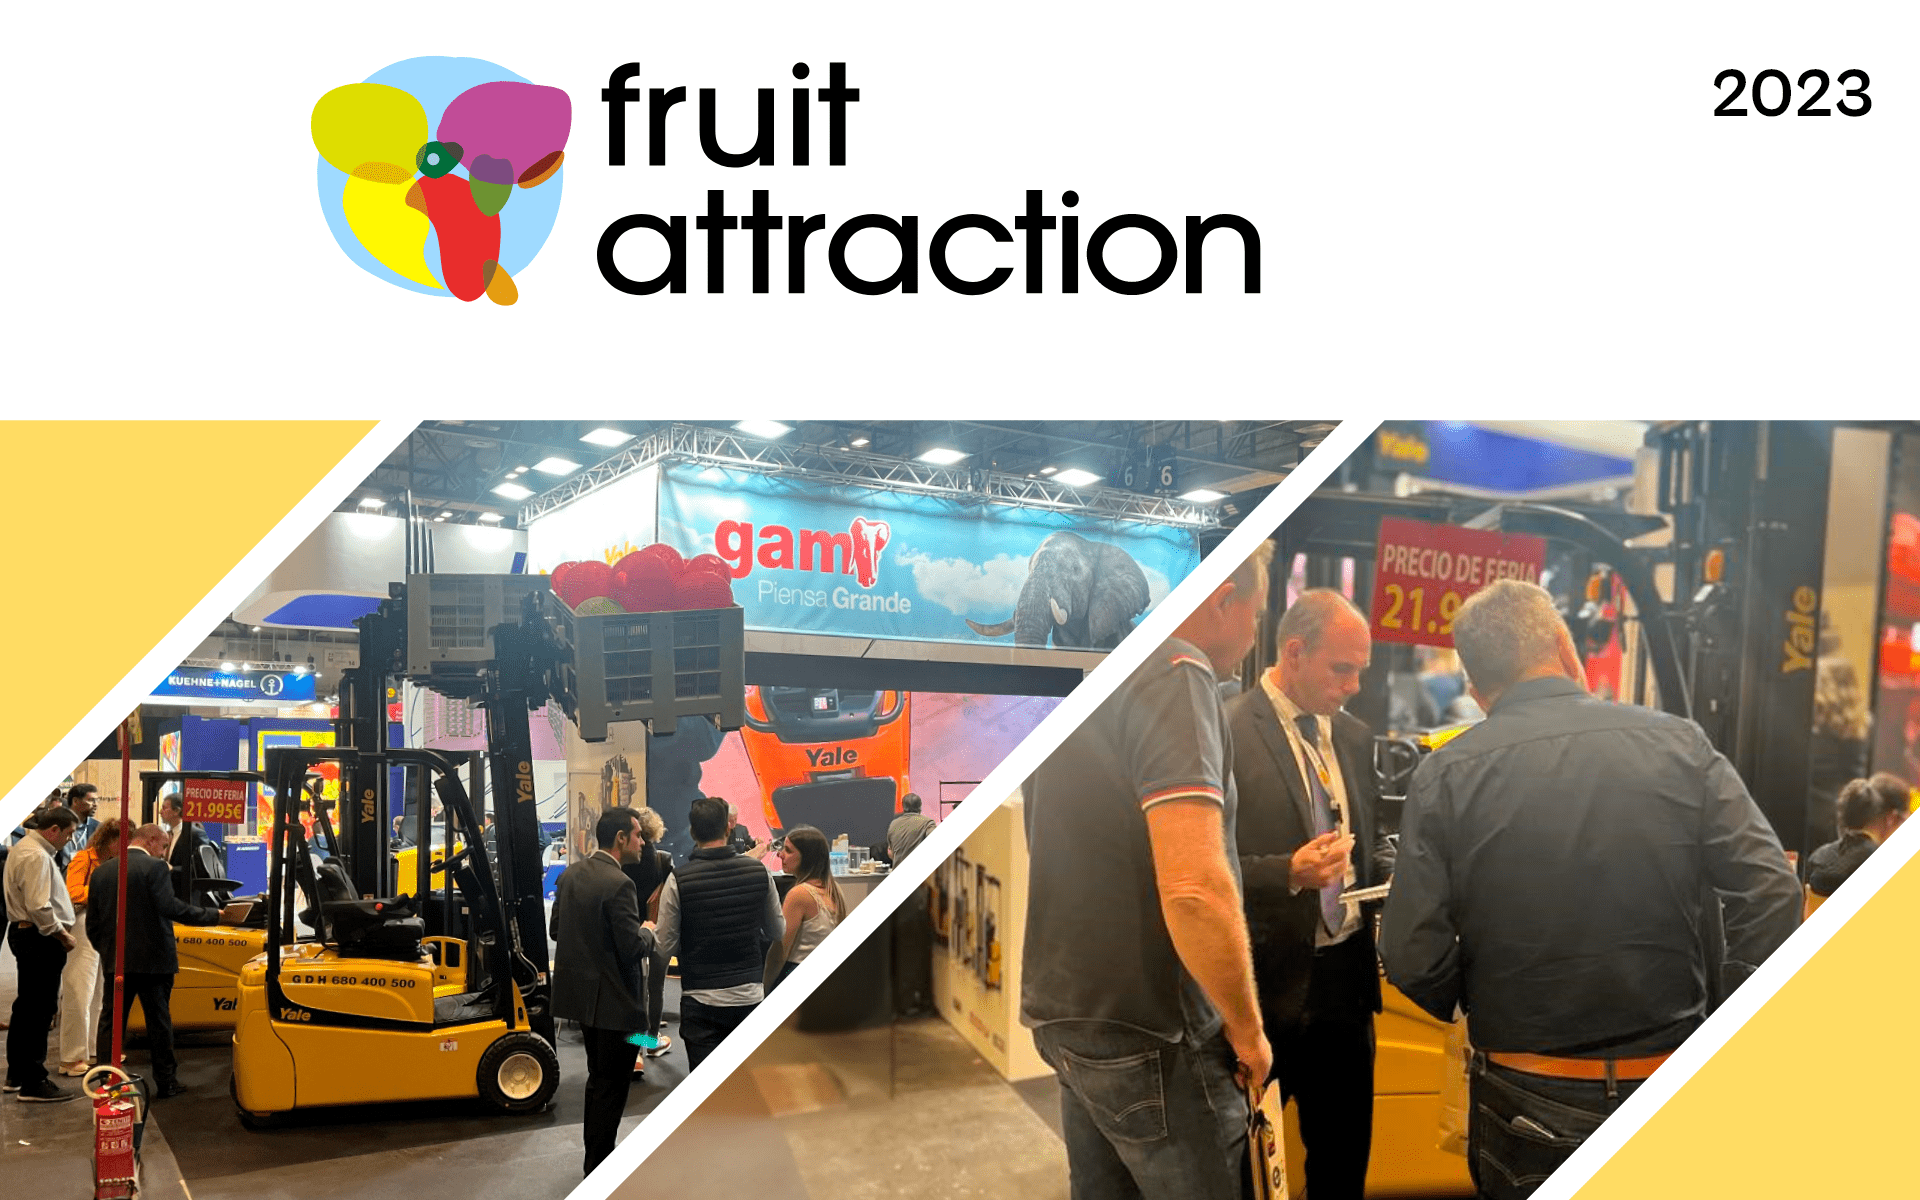 ¡GDH participará en Fruit Attraction 2023! Os esperamos en la próxima edición de la gran feria del sector hortofrutícola. ¡Consigue tu invitación!